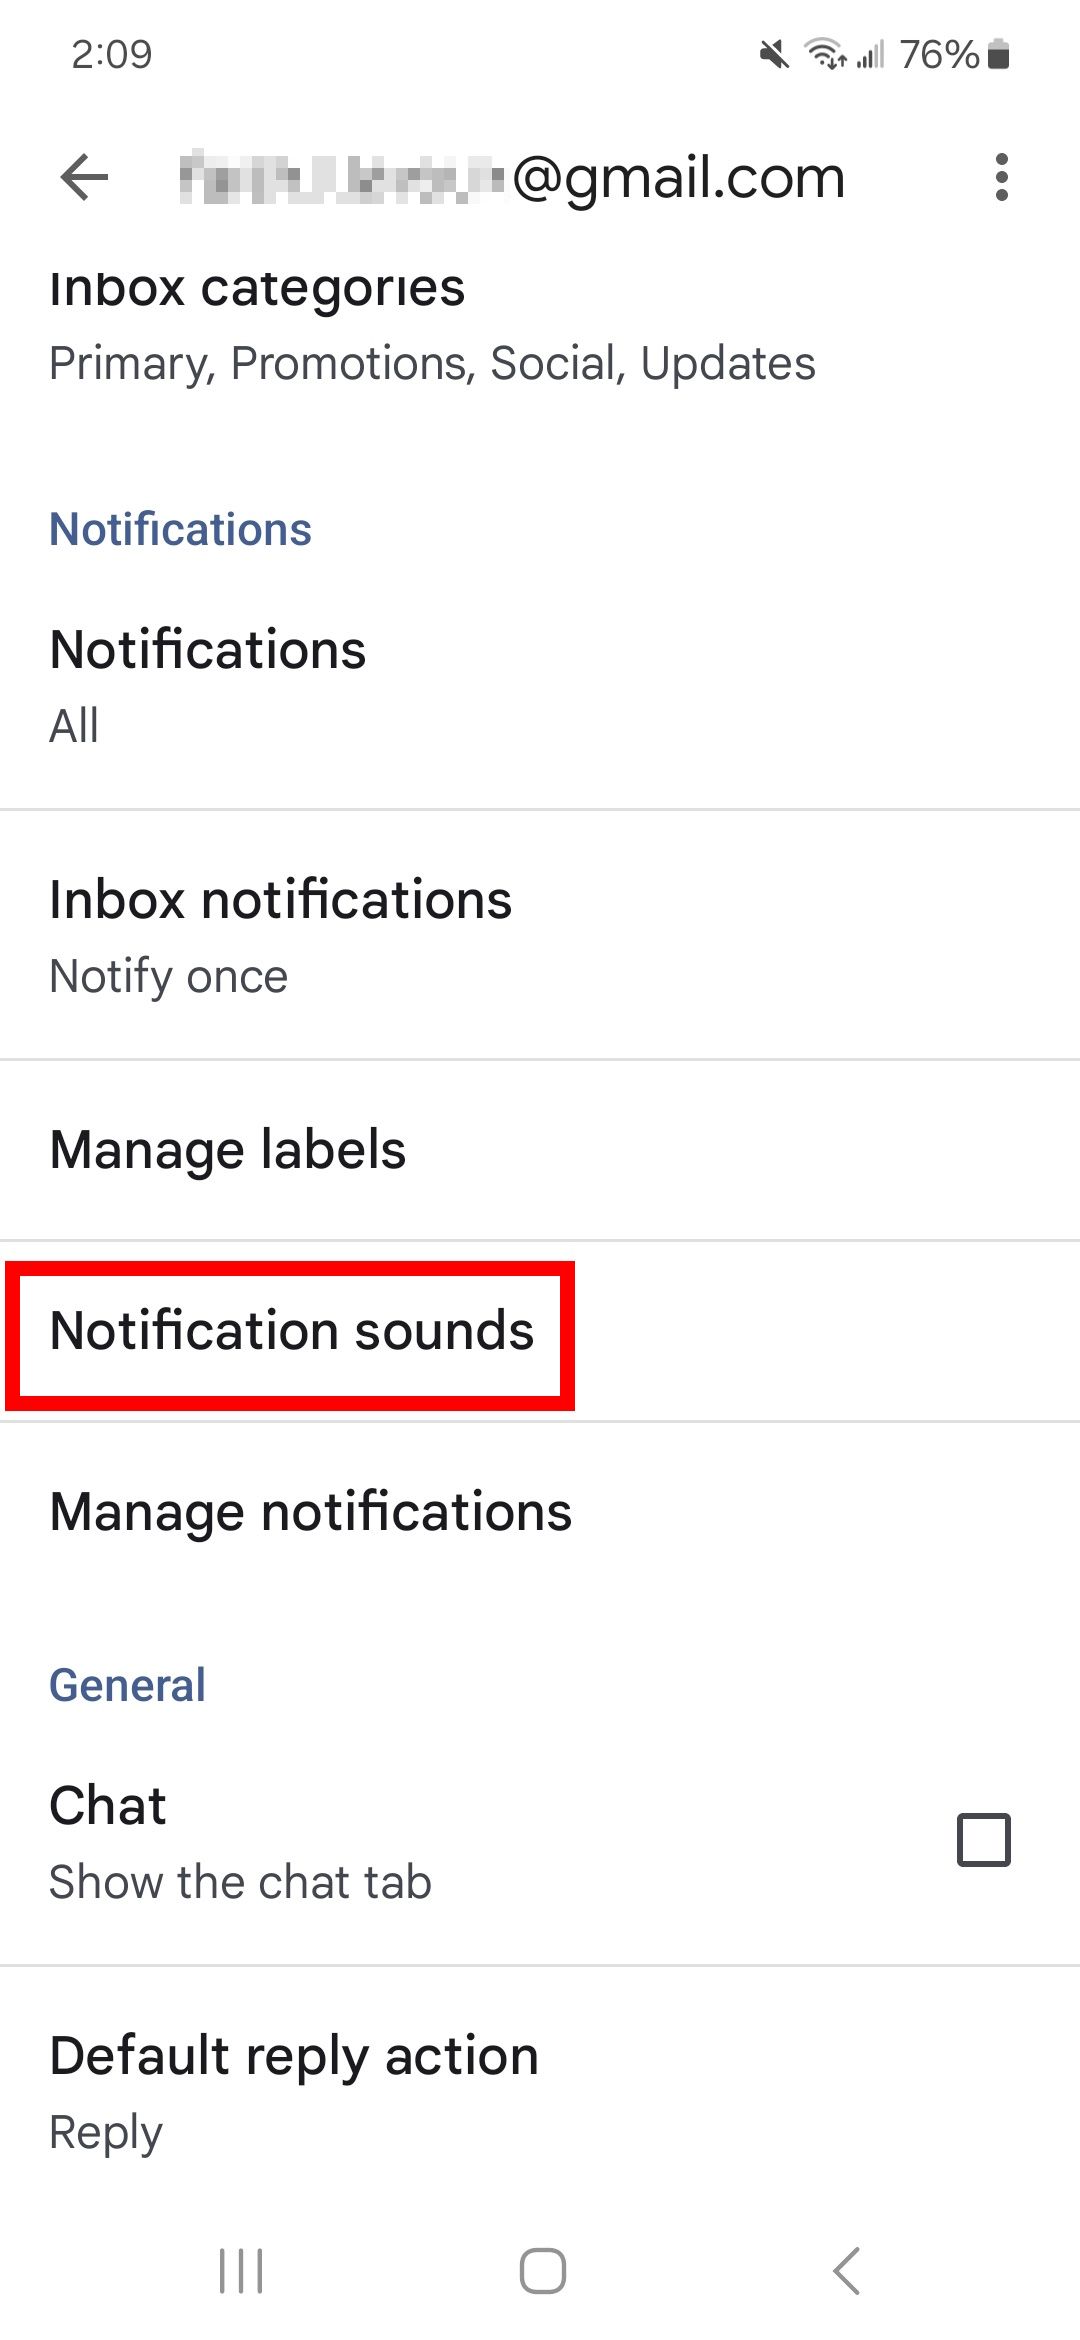 Contorno de retângulo vermelho sobre sons de notificação nas configurações de e-mail no aplicativo Gmail